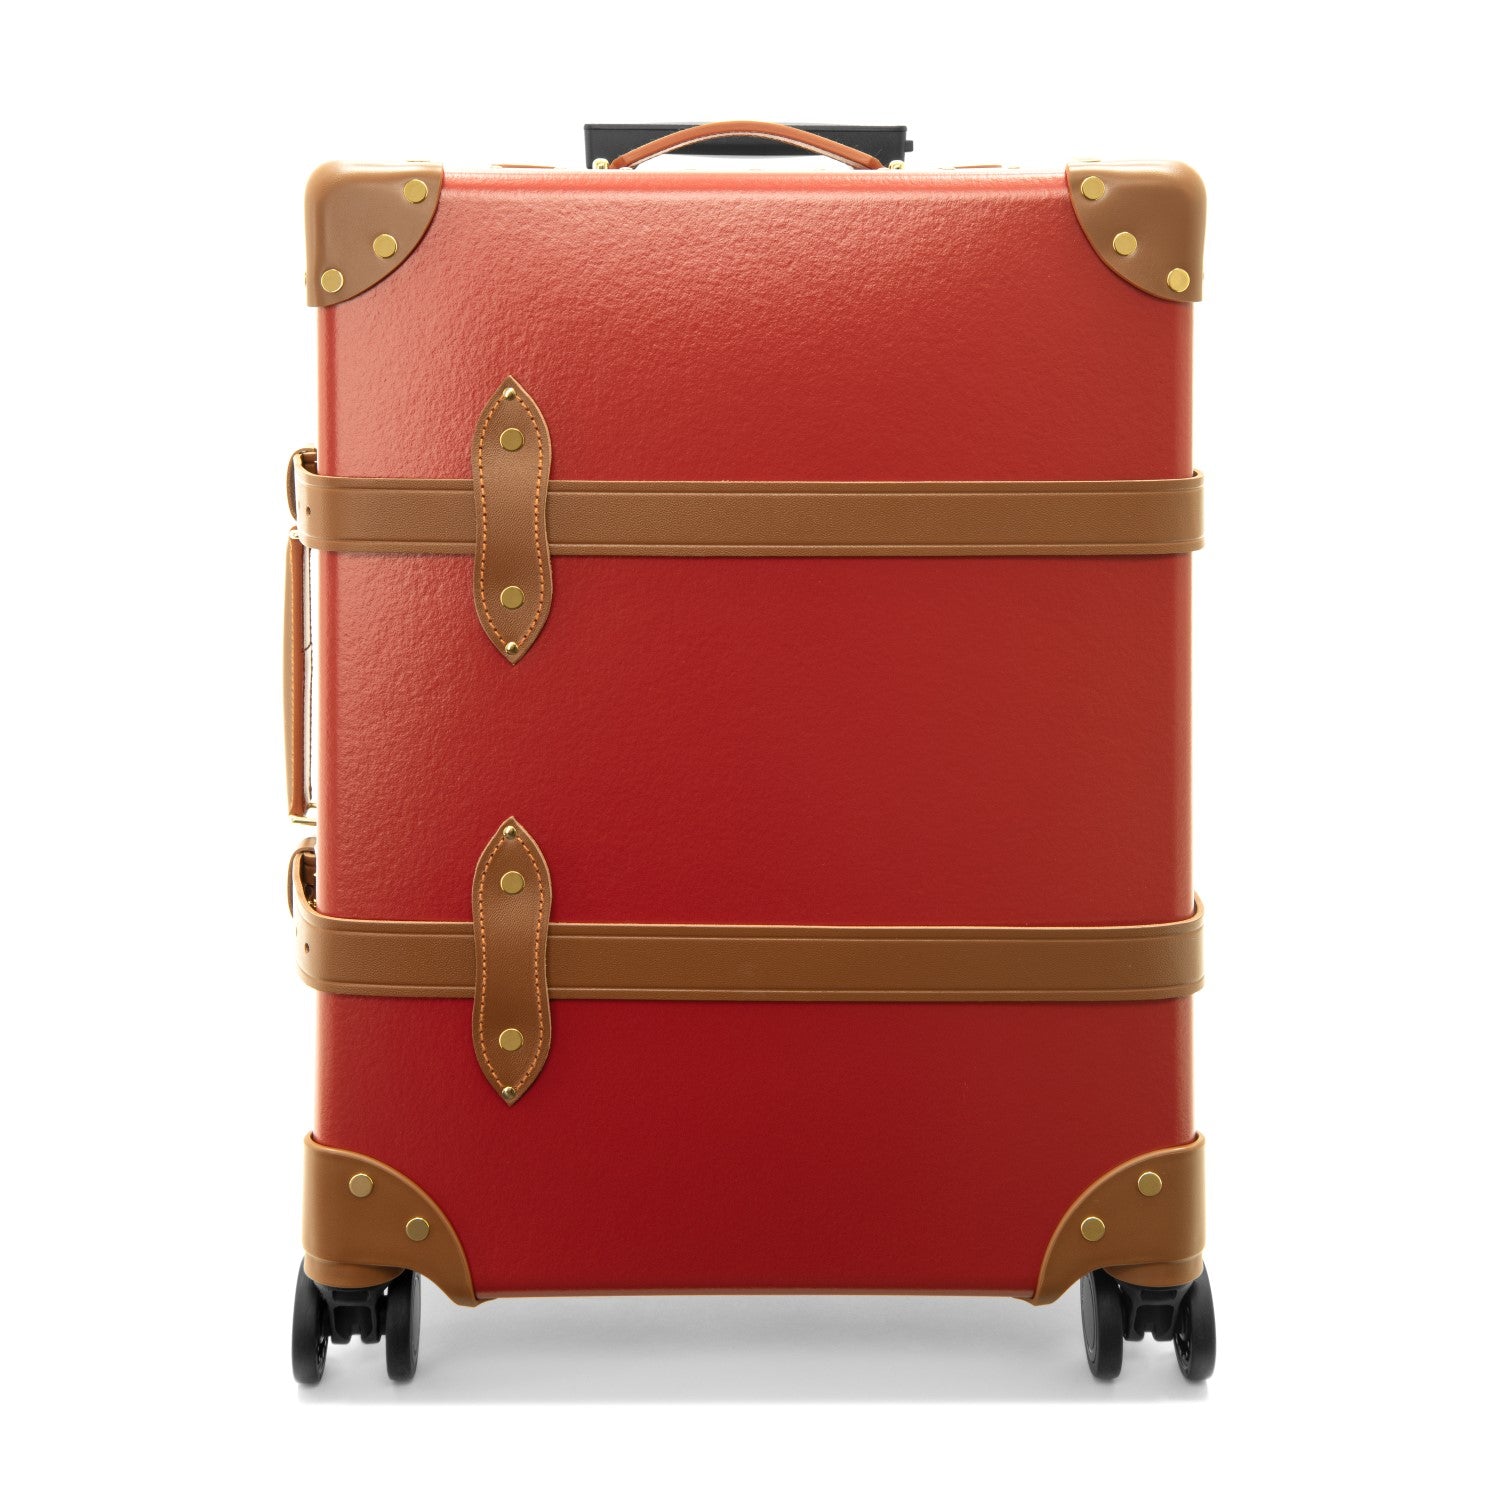 グローブトロッター 機内持ち込み可スーツケース - 旅行用バッグ